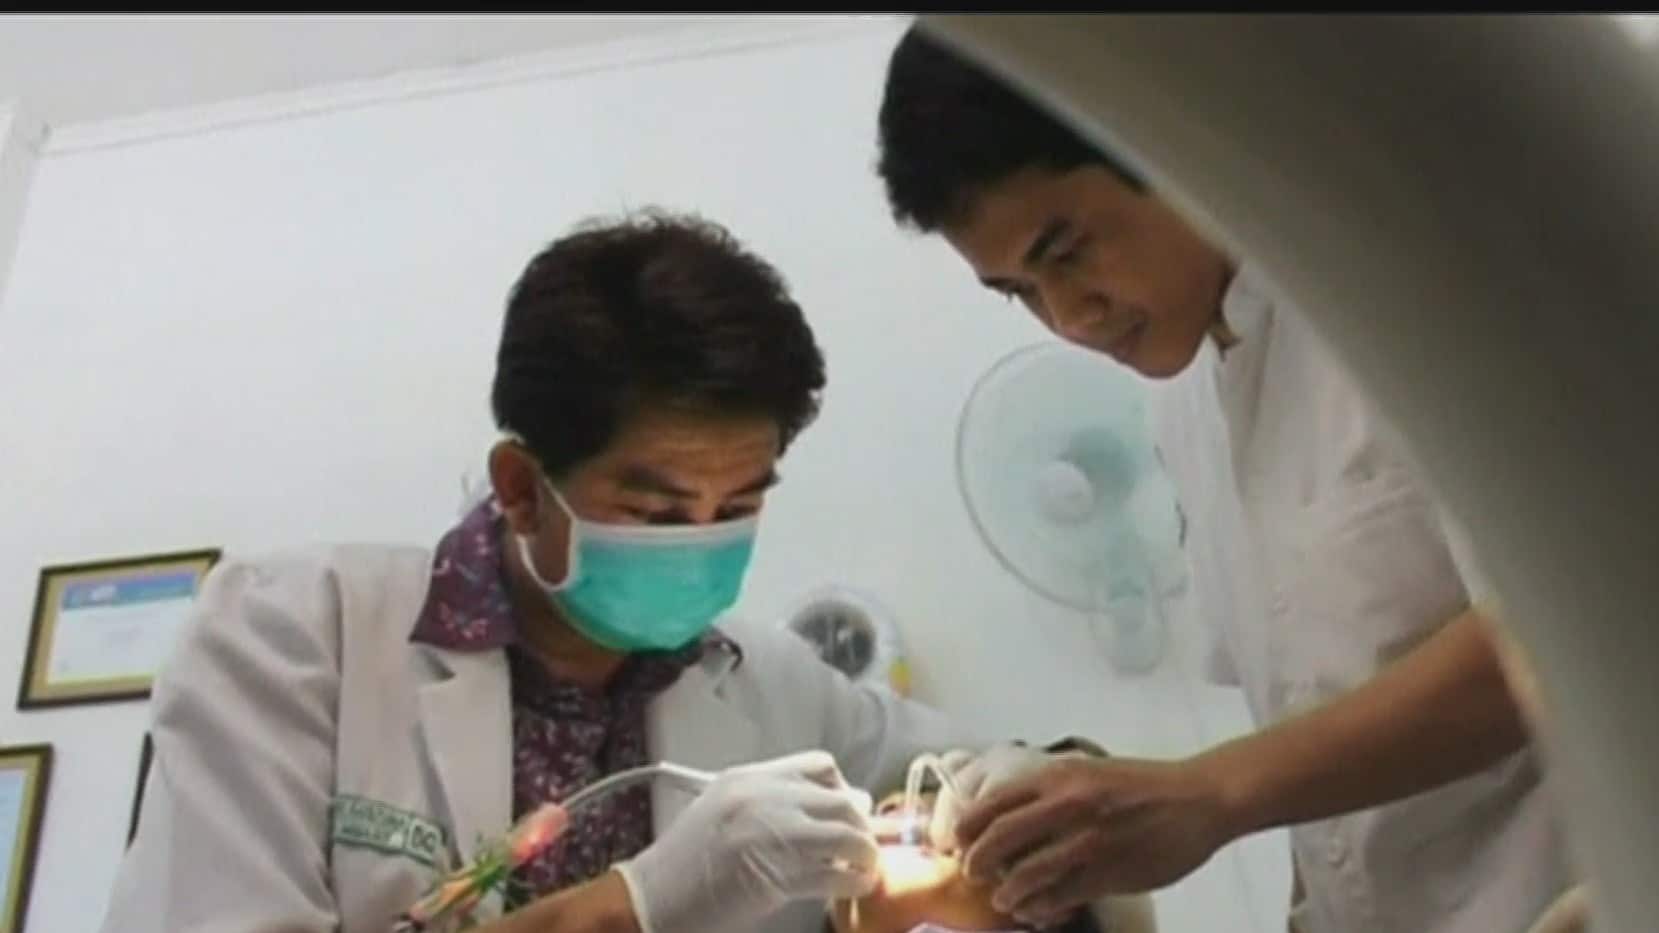 ida al dentista una actividad de primera necesidad que se vio severamente afectada por la pandemia